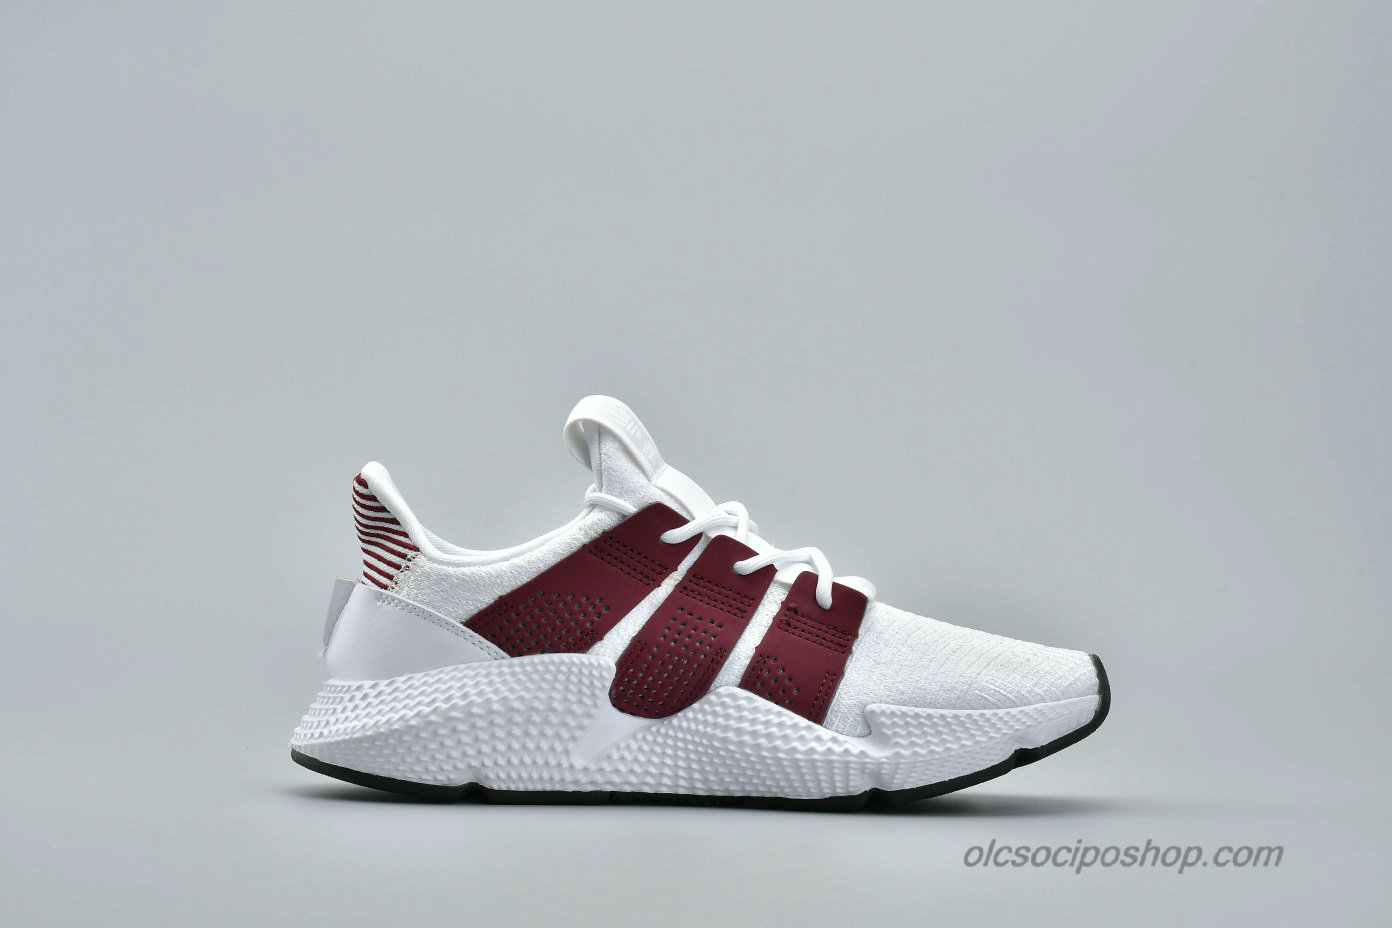 Adidas Prophere Undftd Fehér/Sötét vörös Cipők (D96658) - Kattintásra bezárul